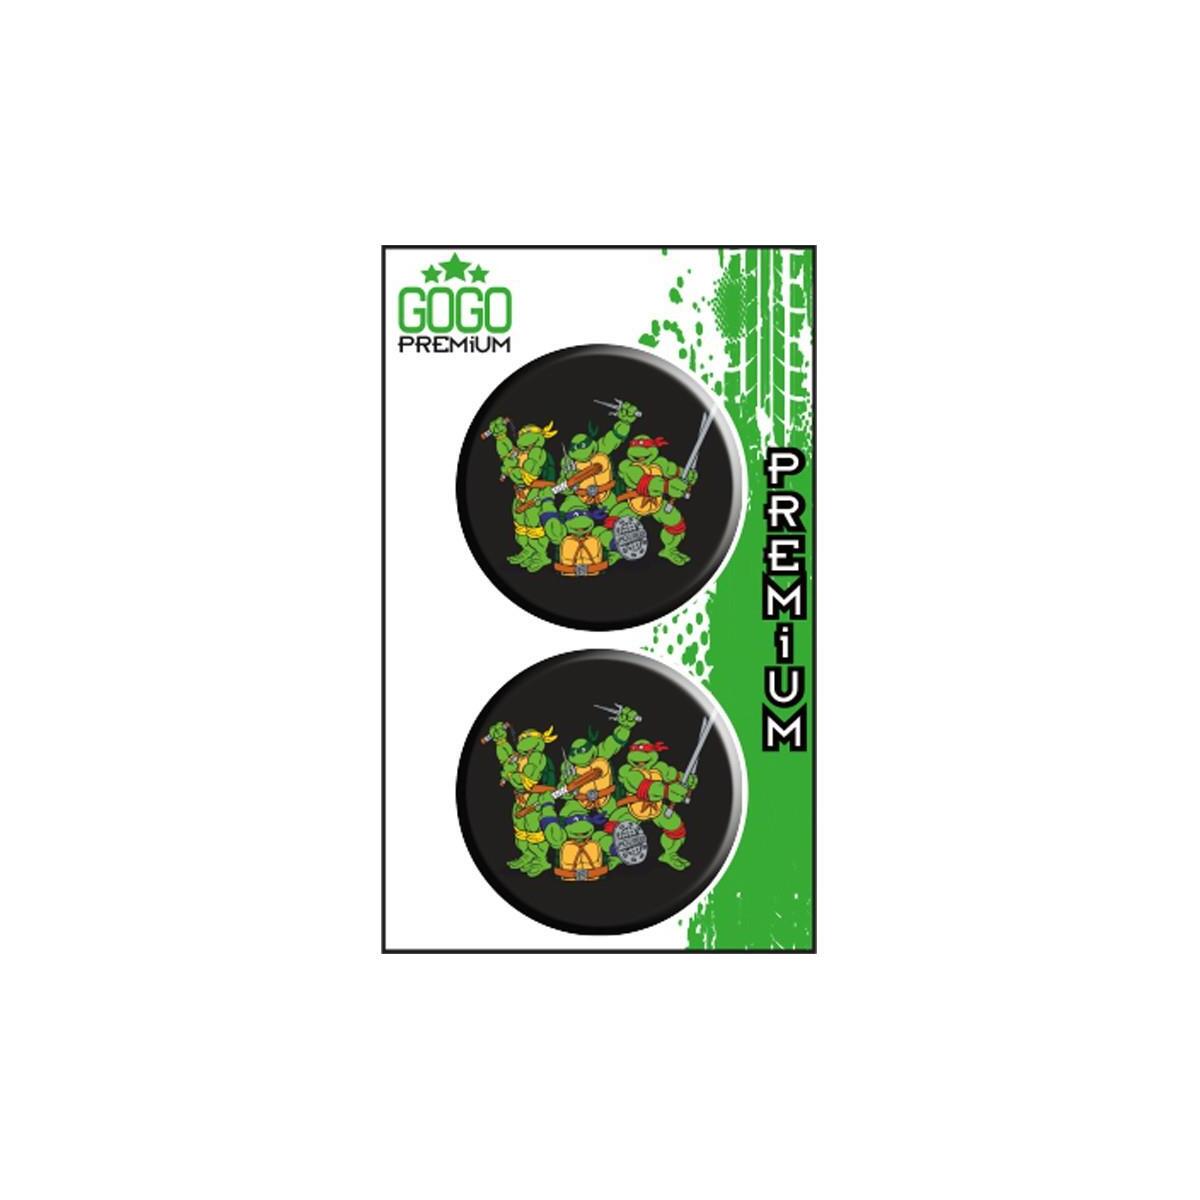 Sevenkardeşler Ninja Kaplumbağa (5X5 Cm) İkili Damla Etiket